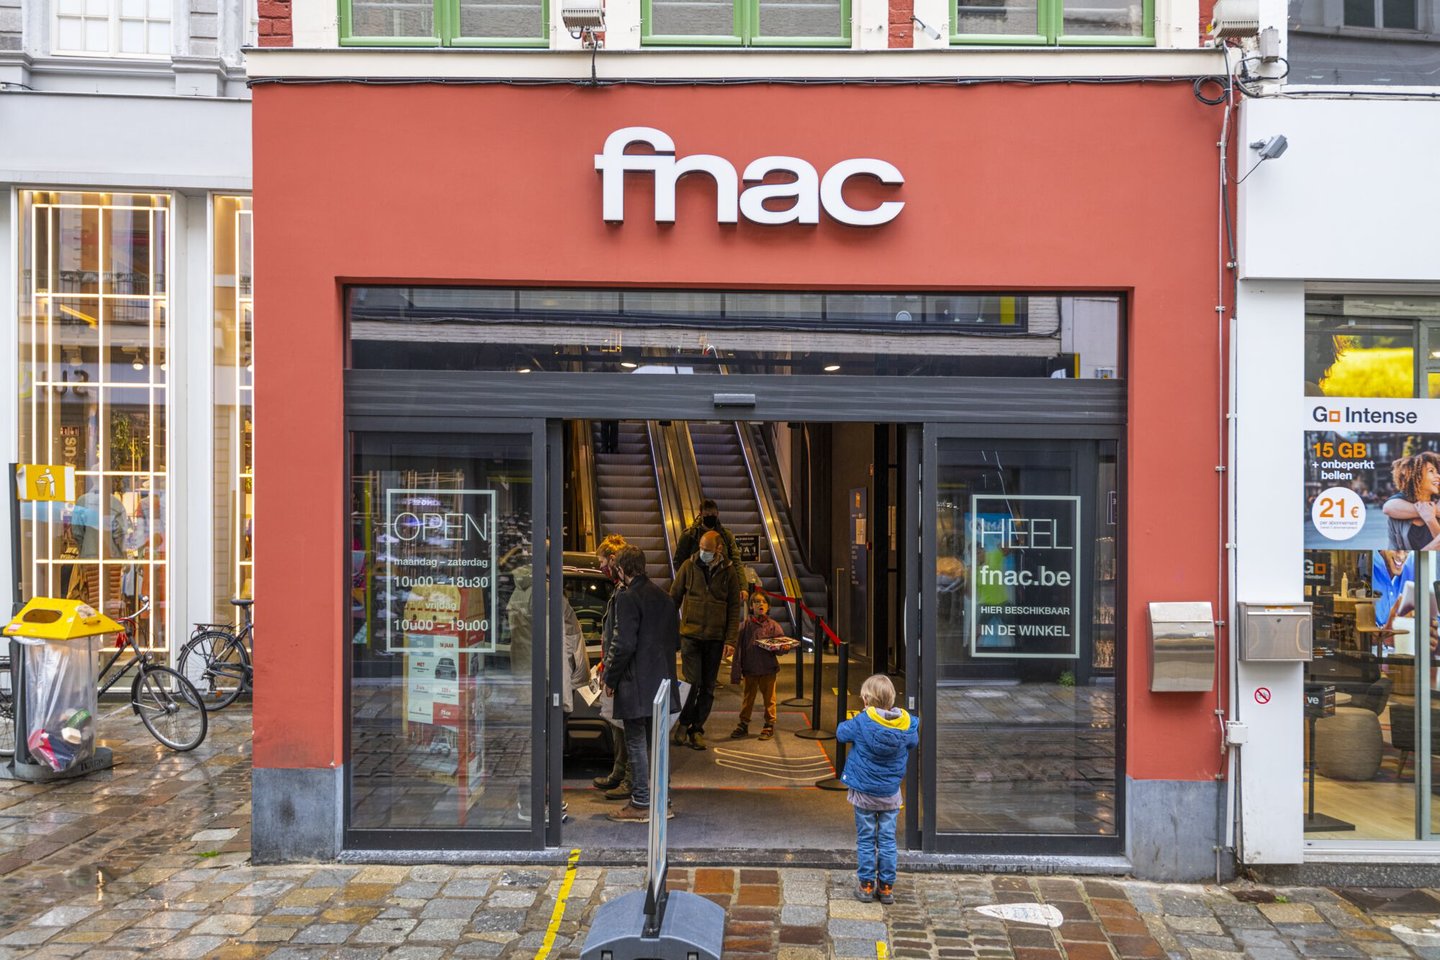 Toegang van FNAC, een boekhandel en winkel voor multimedia in Gent